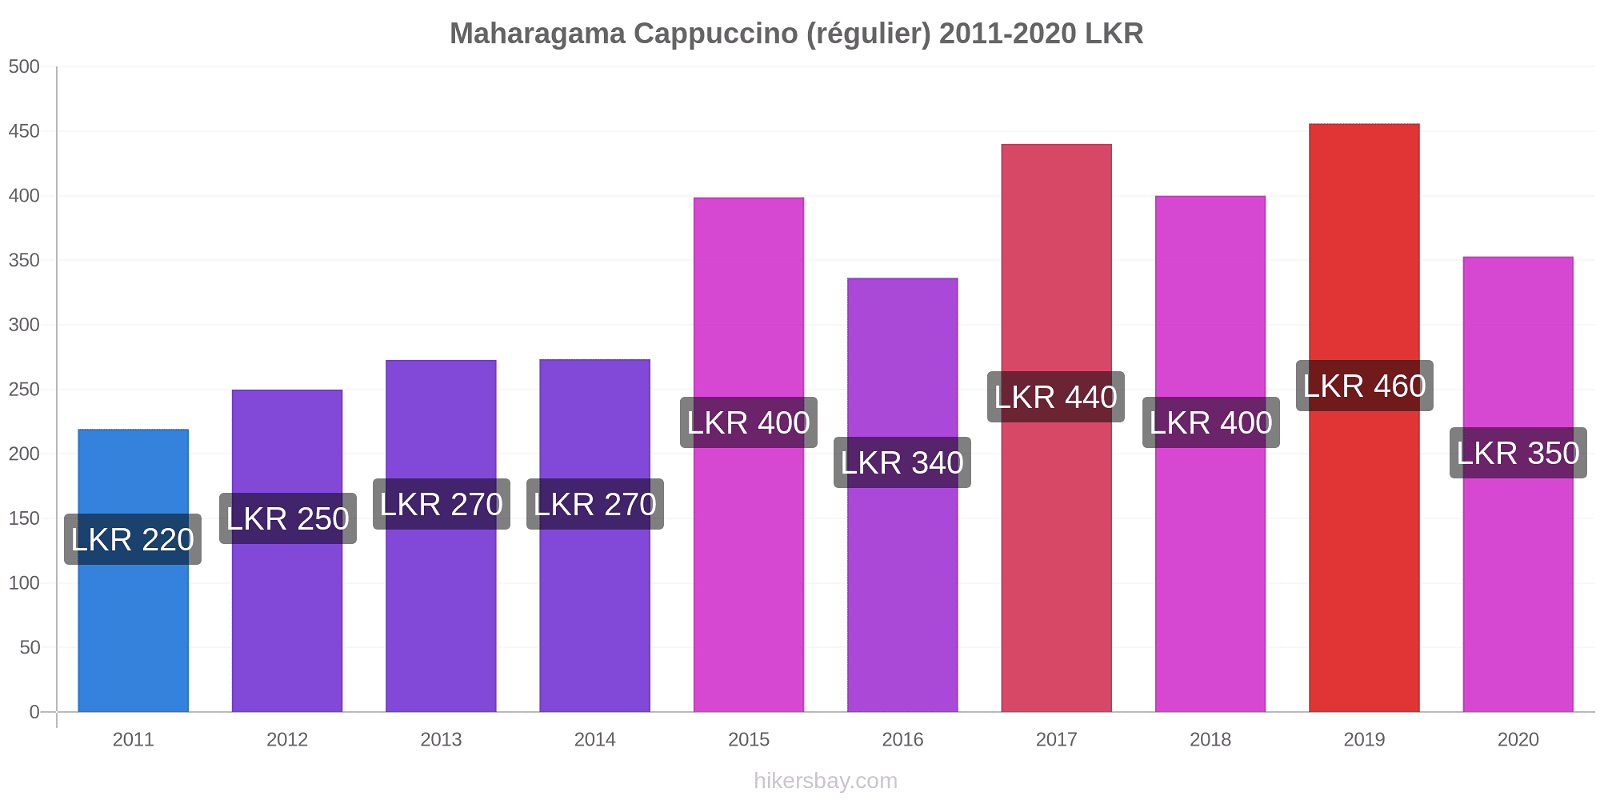 Maharagama changements de prix Cappuccino (régulier) hikersbay.com